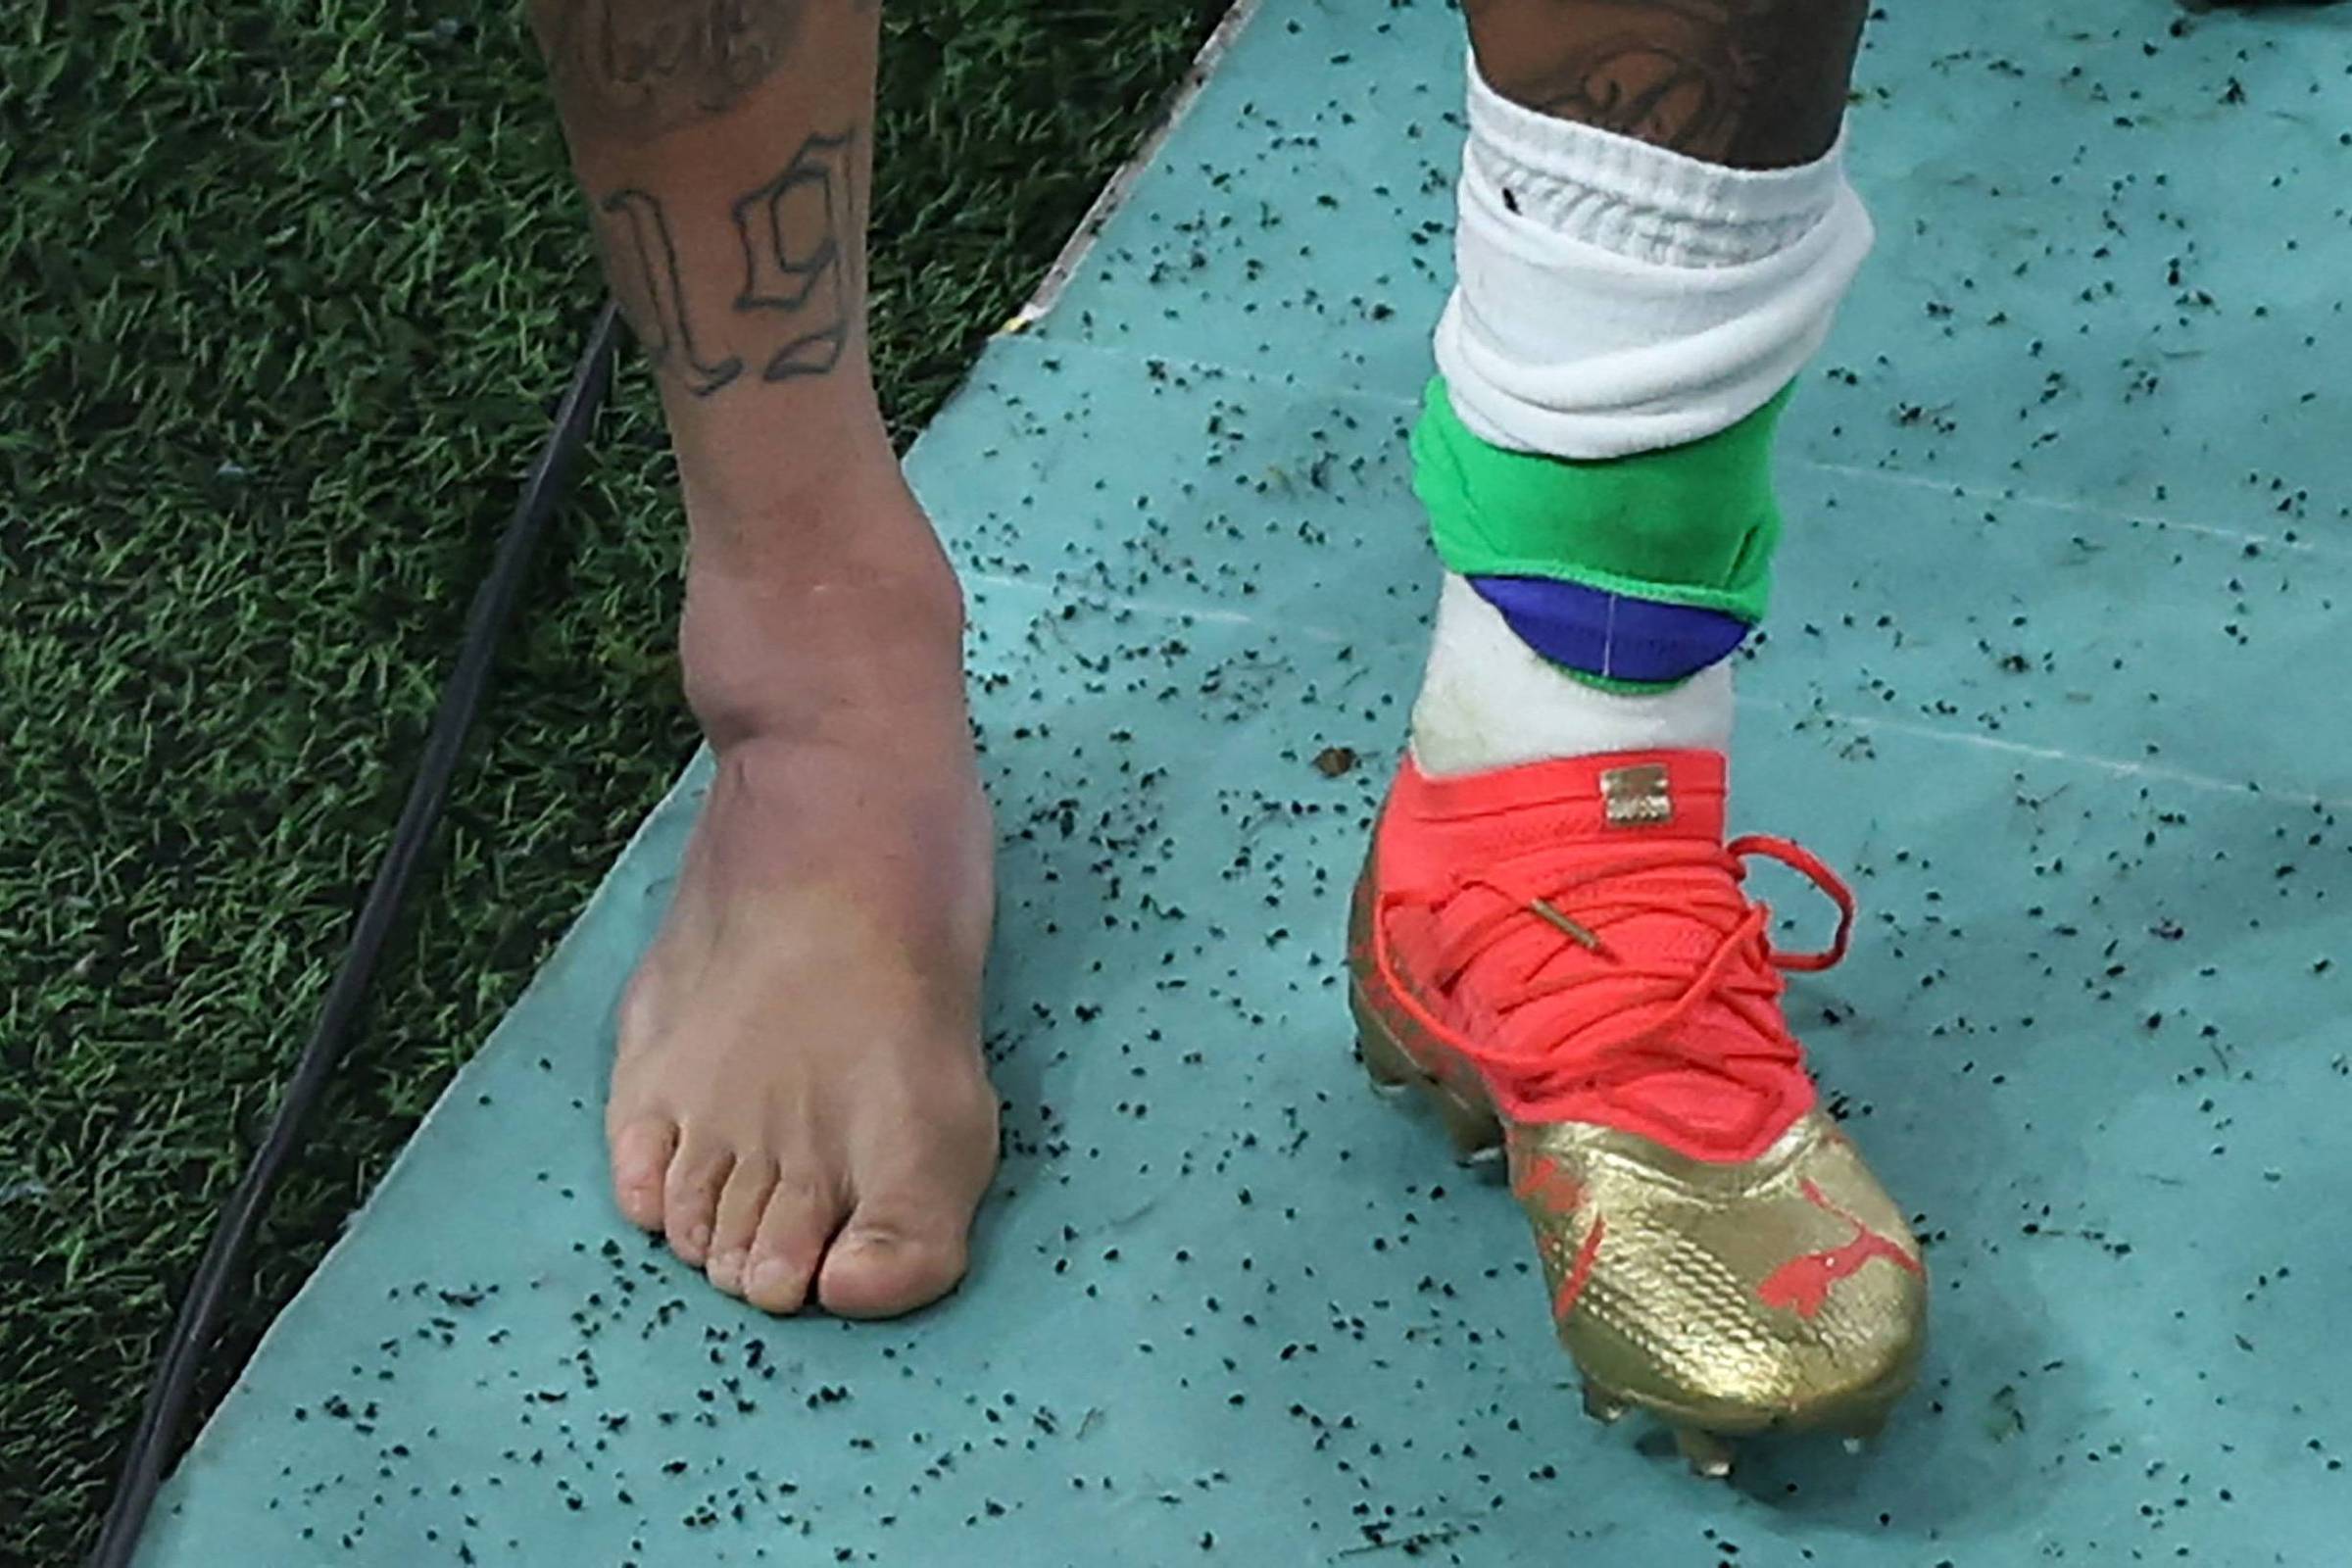 O que Neymar teve no tornozelo?